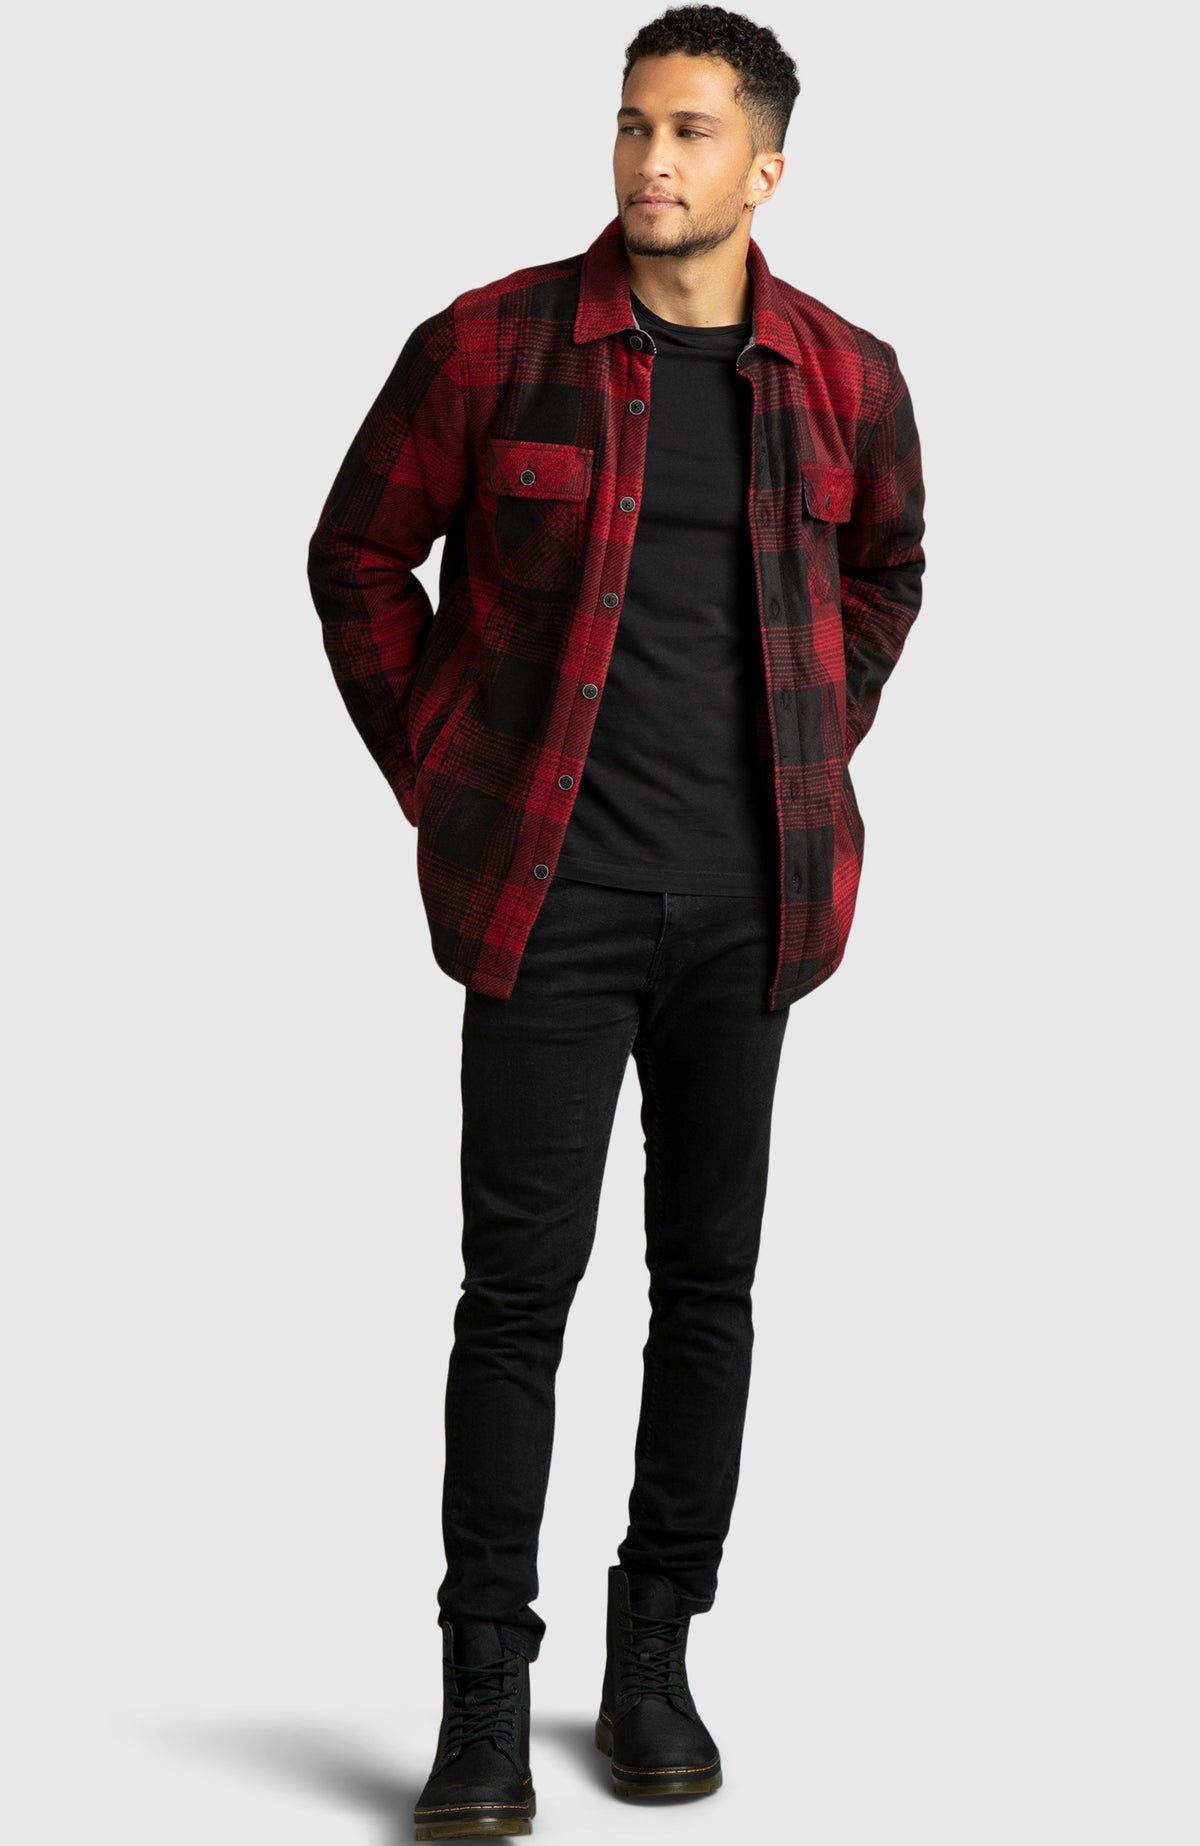 Red & Black Polar Fleece Shirt Jacket for Men - Full Length